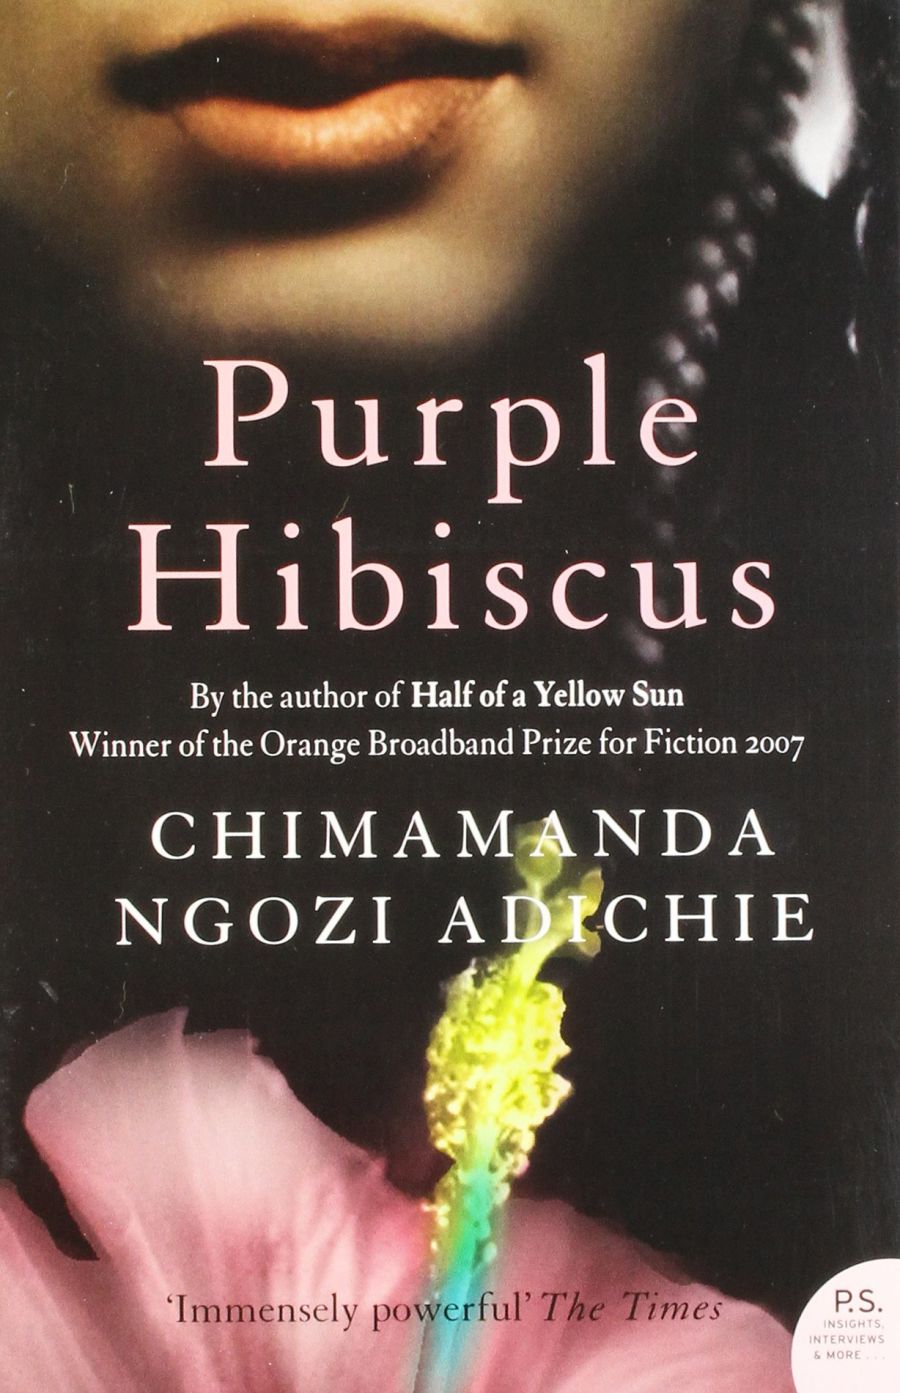 book cover: Purple hibiscus, by Chimamanda Ngozi Adichie.